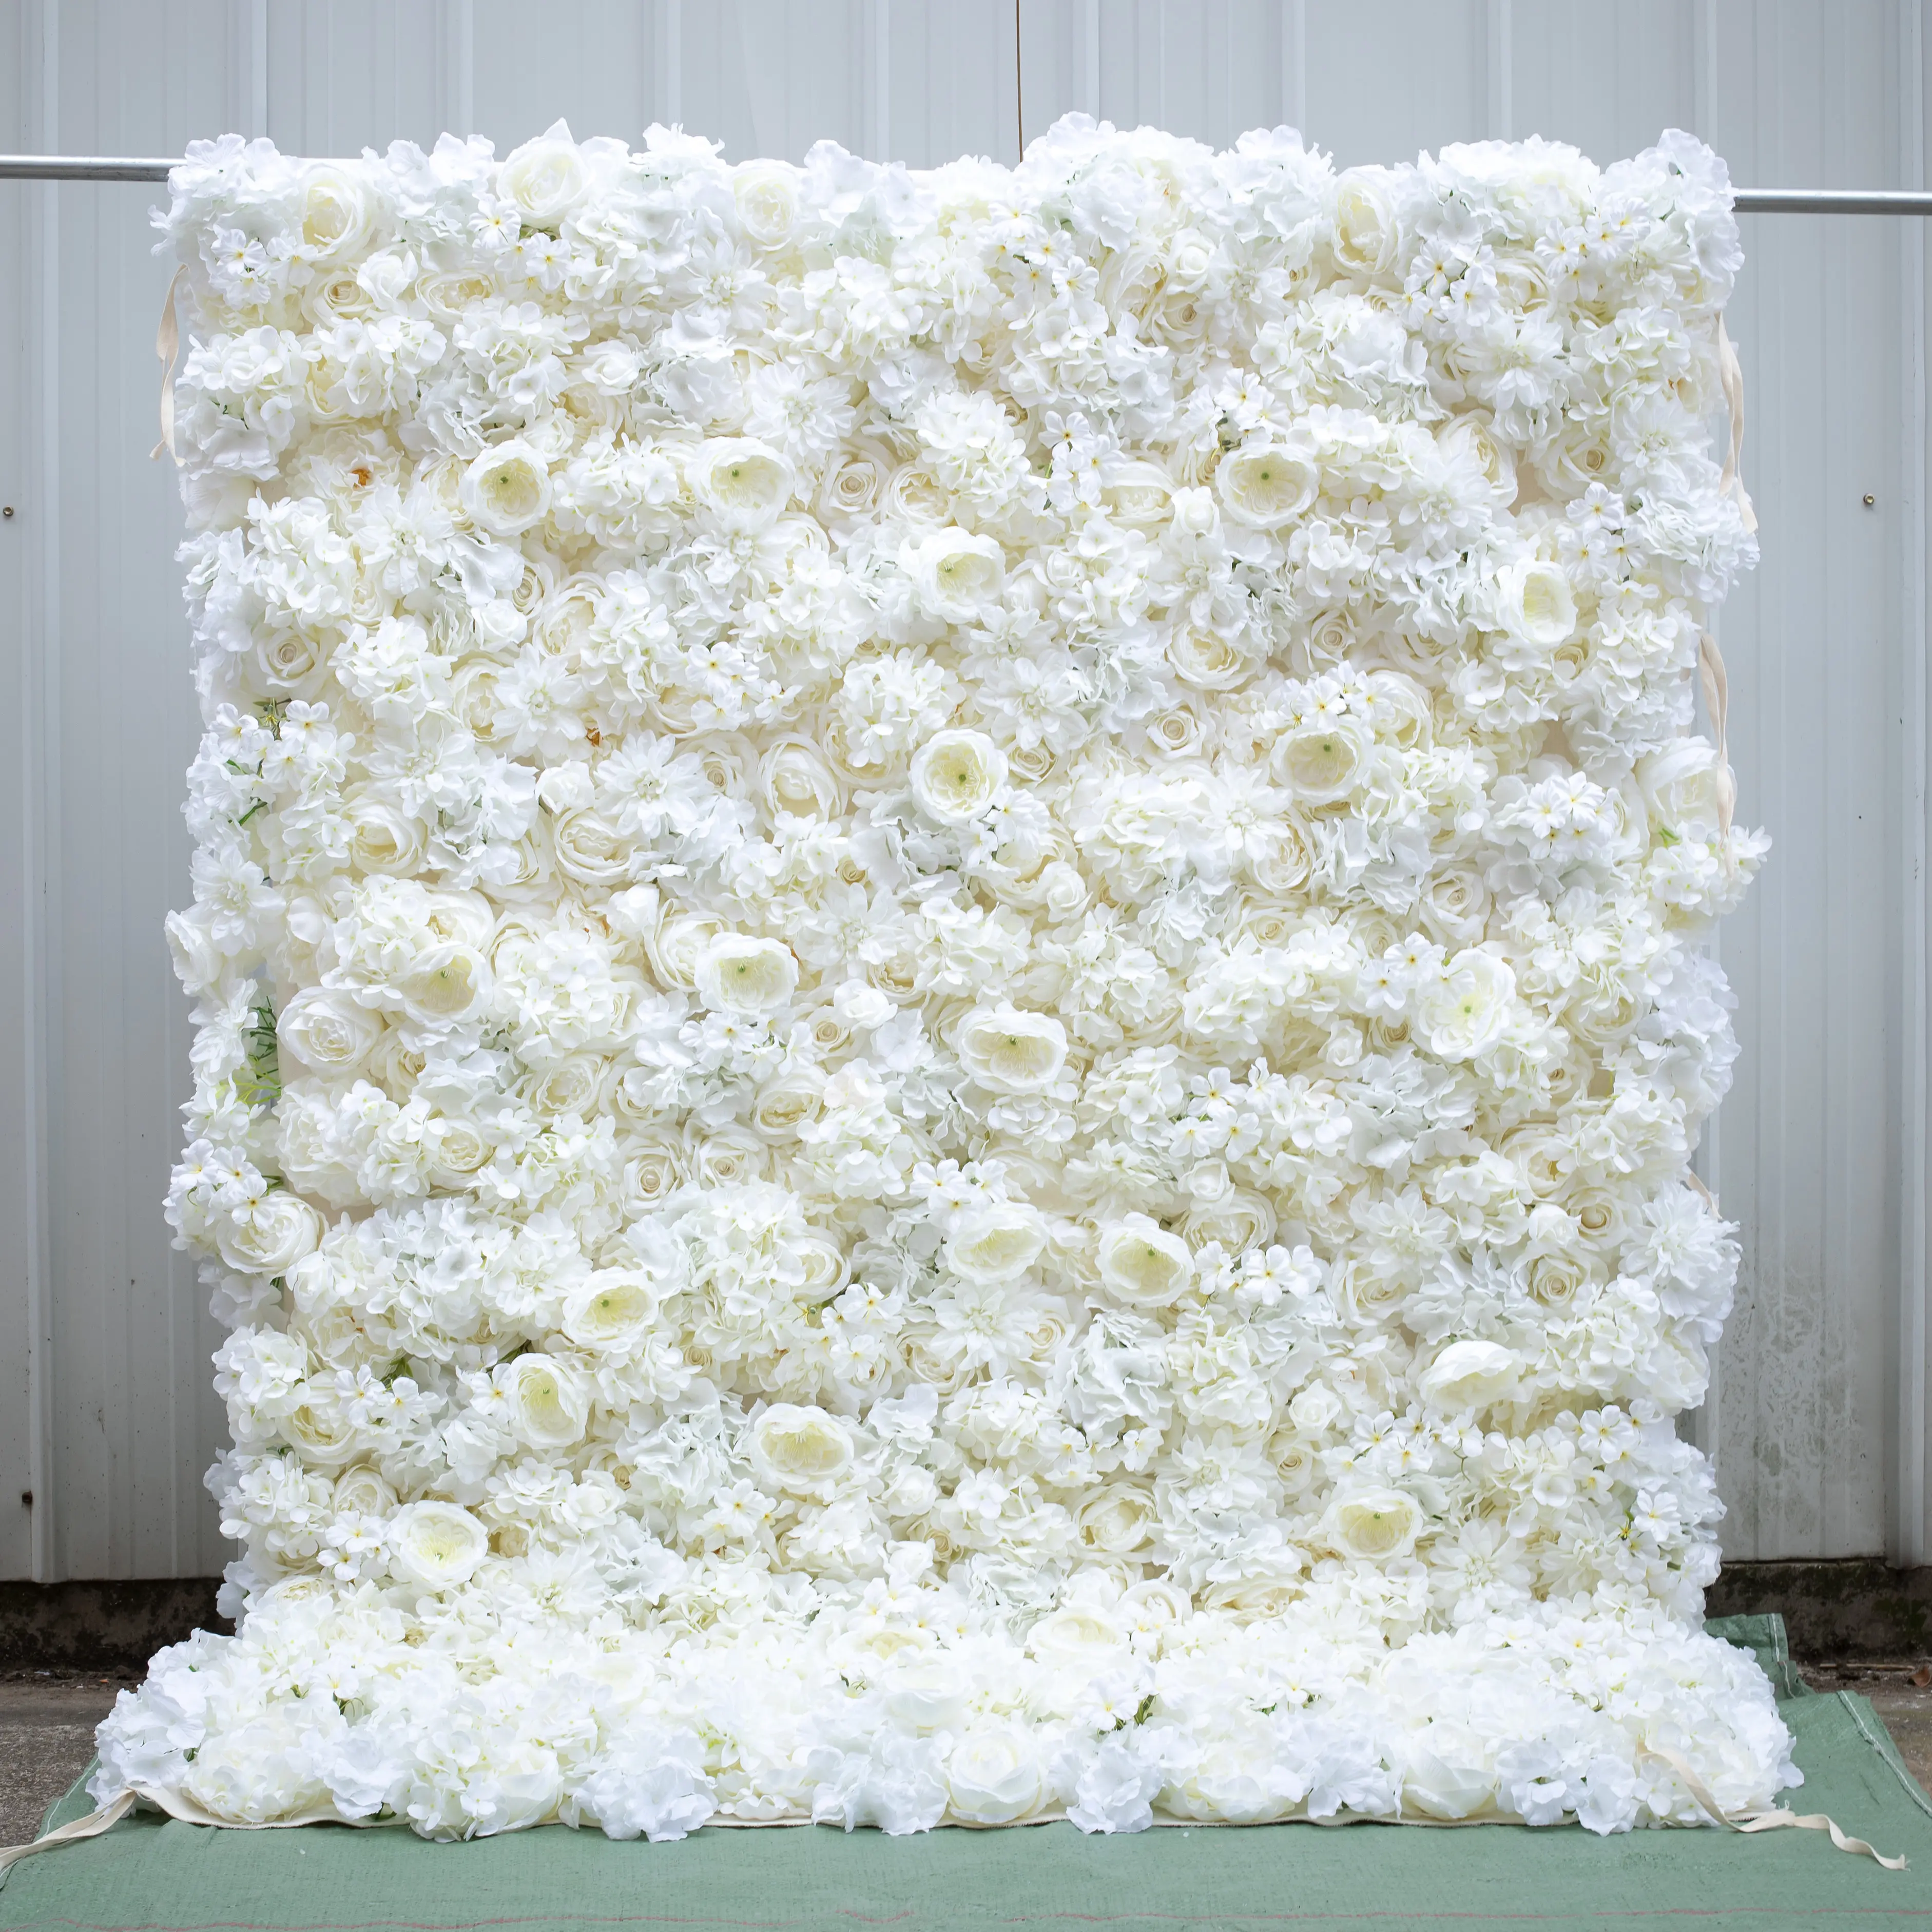 زهور صناعية بيضاء ثلاثية الأبعاد عالية الجودة 8*8 قدم ديكور جدران ستارة قابلة للطي ستارة خلفية لتزيين حفلات الزفاف